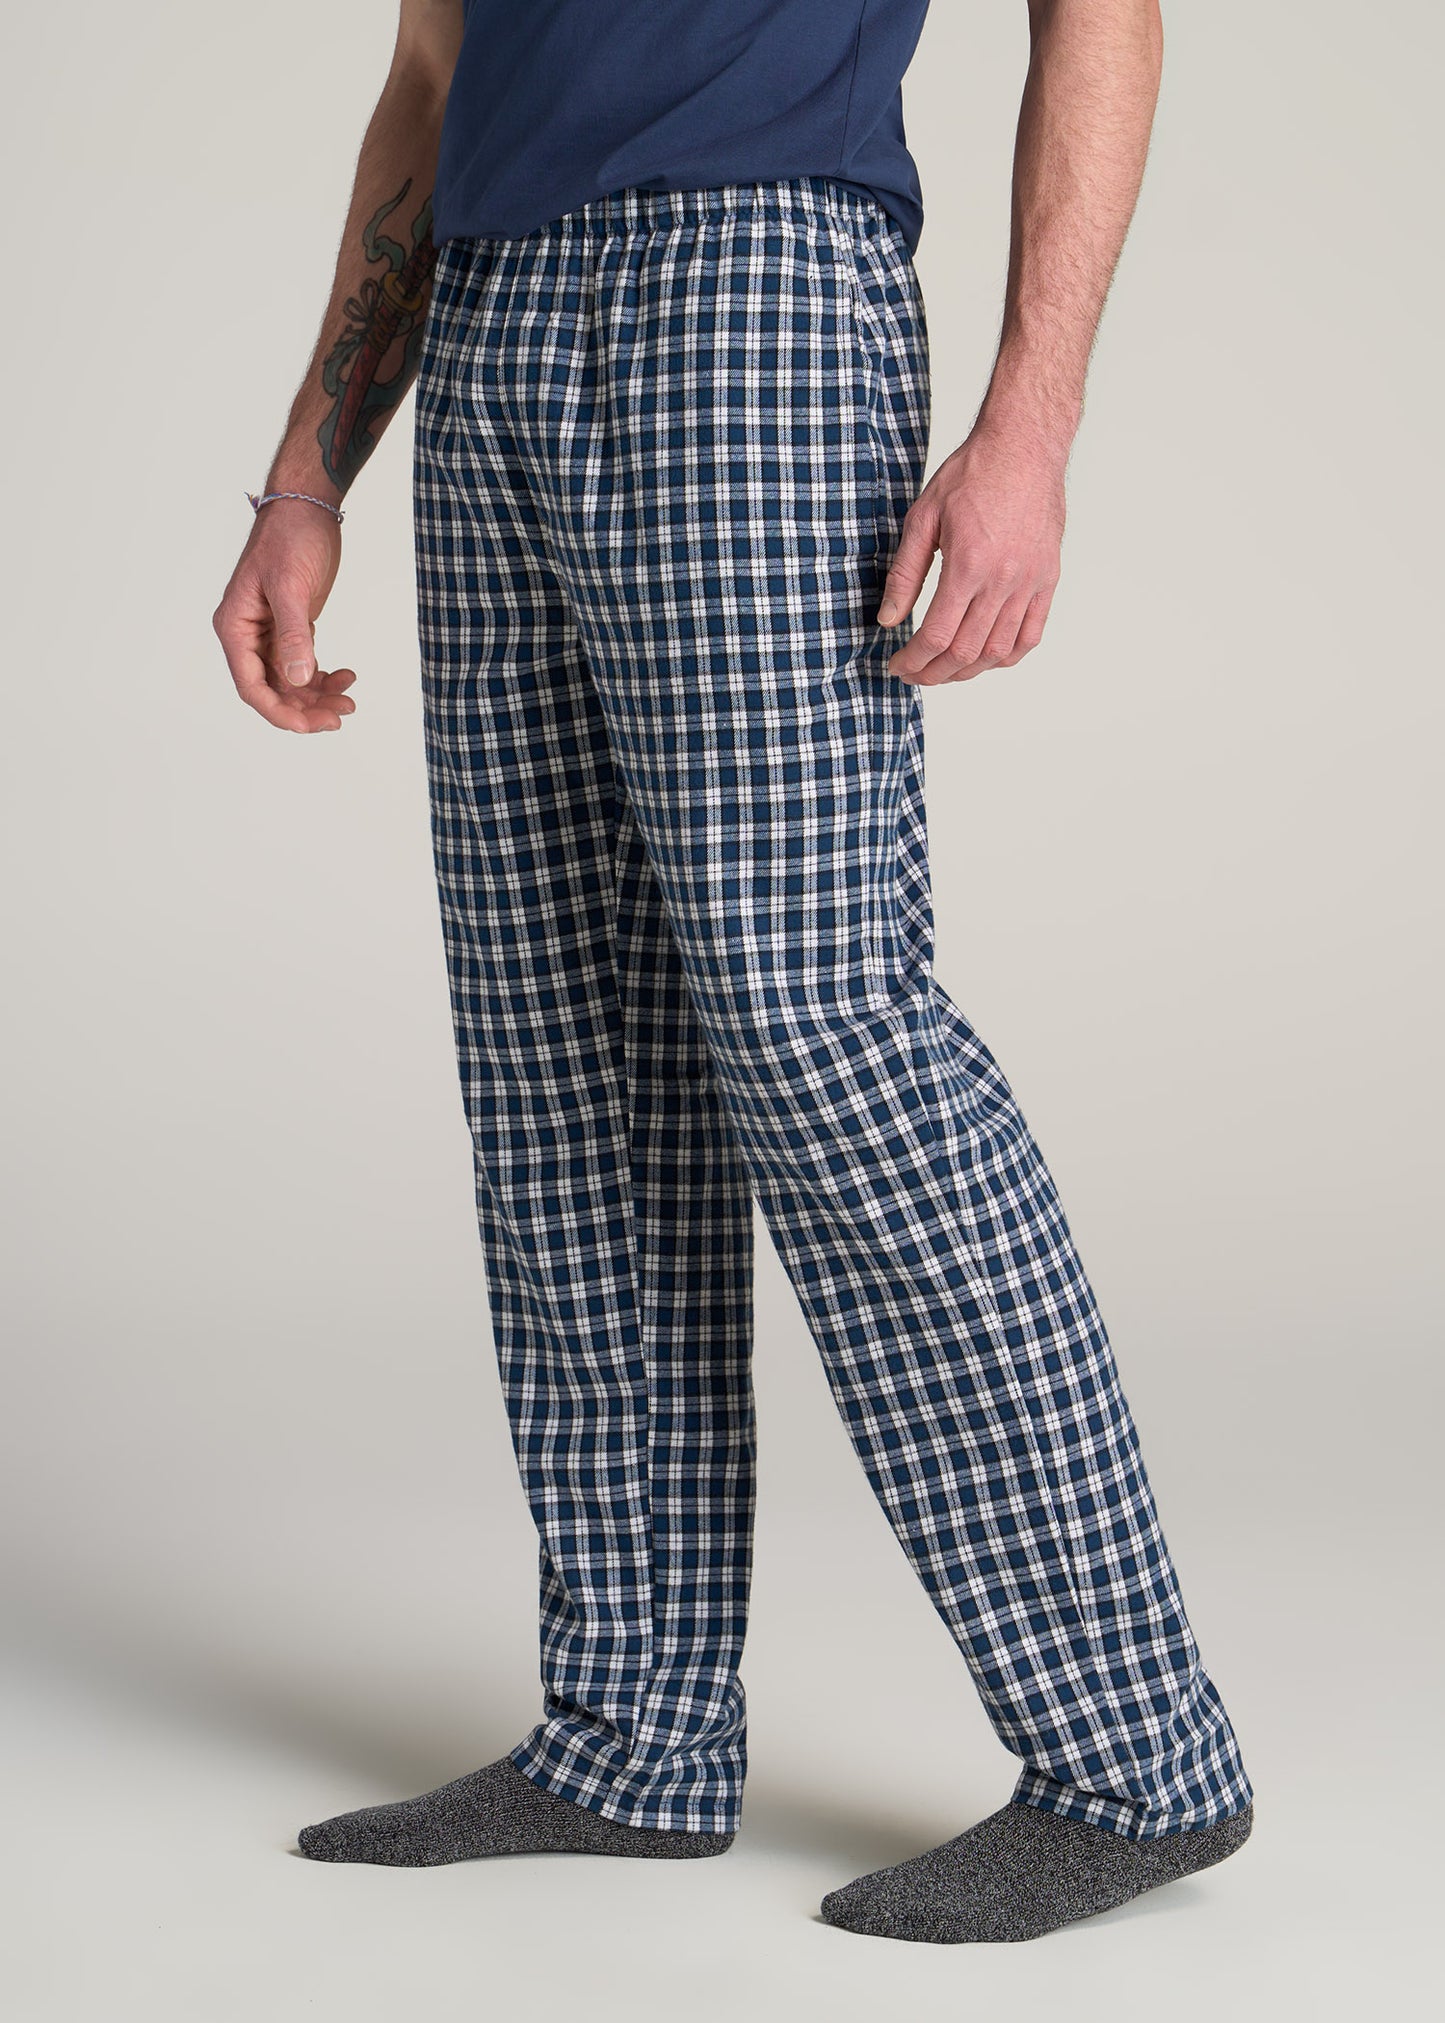 American-Tall-Men-Plaid-Pajama-Pants-Navy-White-Plaid-side